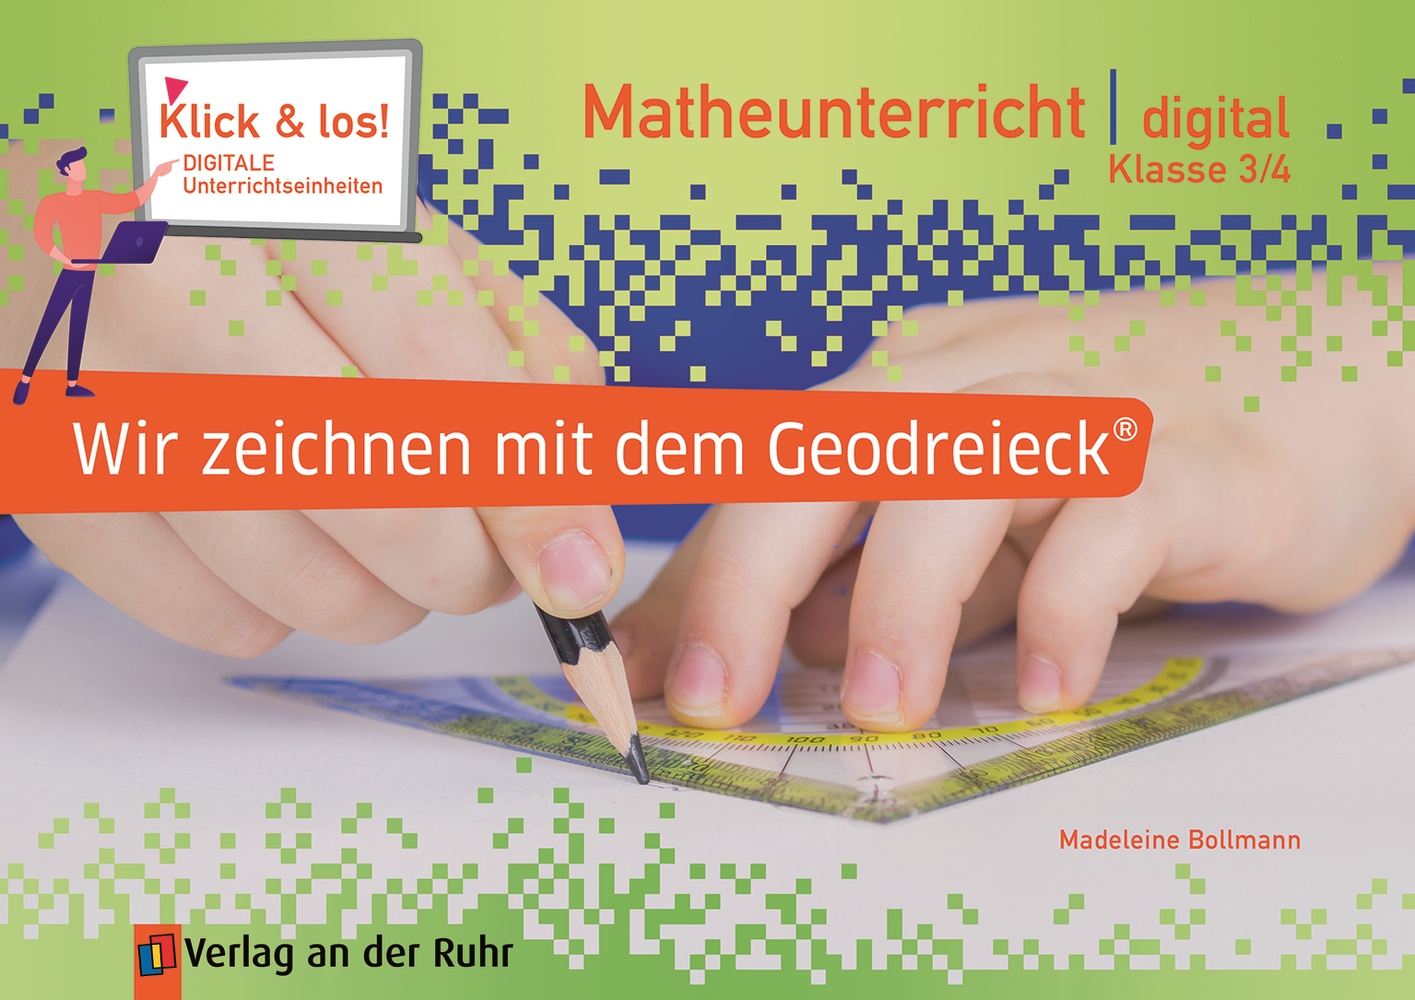 Wir zeichnen mit dem Geodreieck® - Matheunterricht digital – Klasse 3/4 - Premium-Lizenz - Online